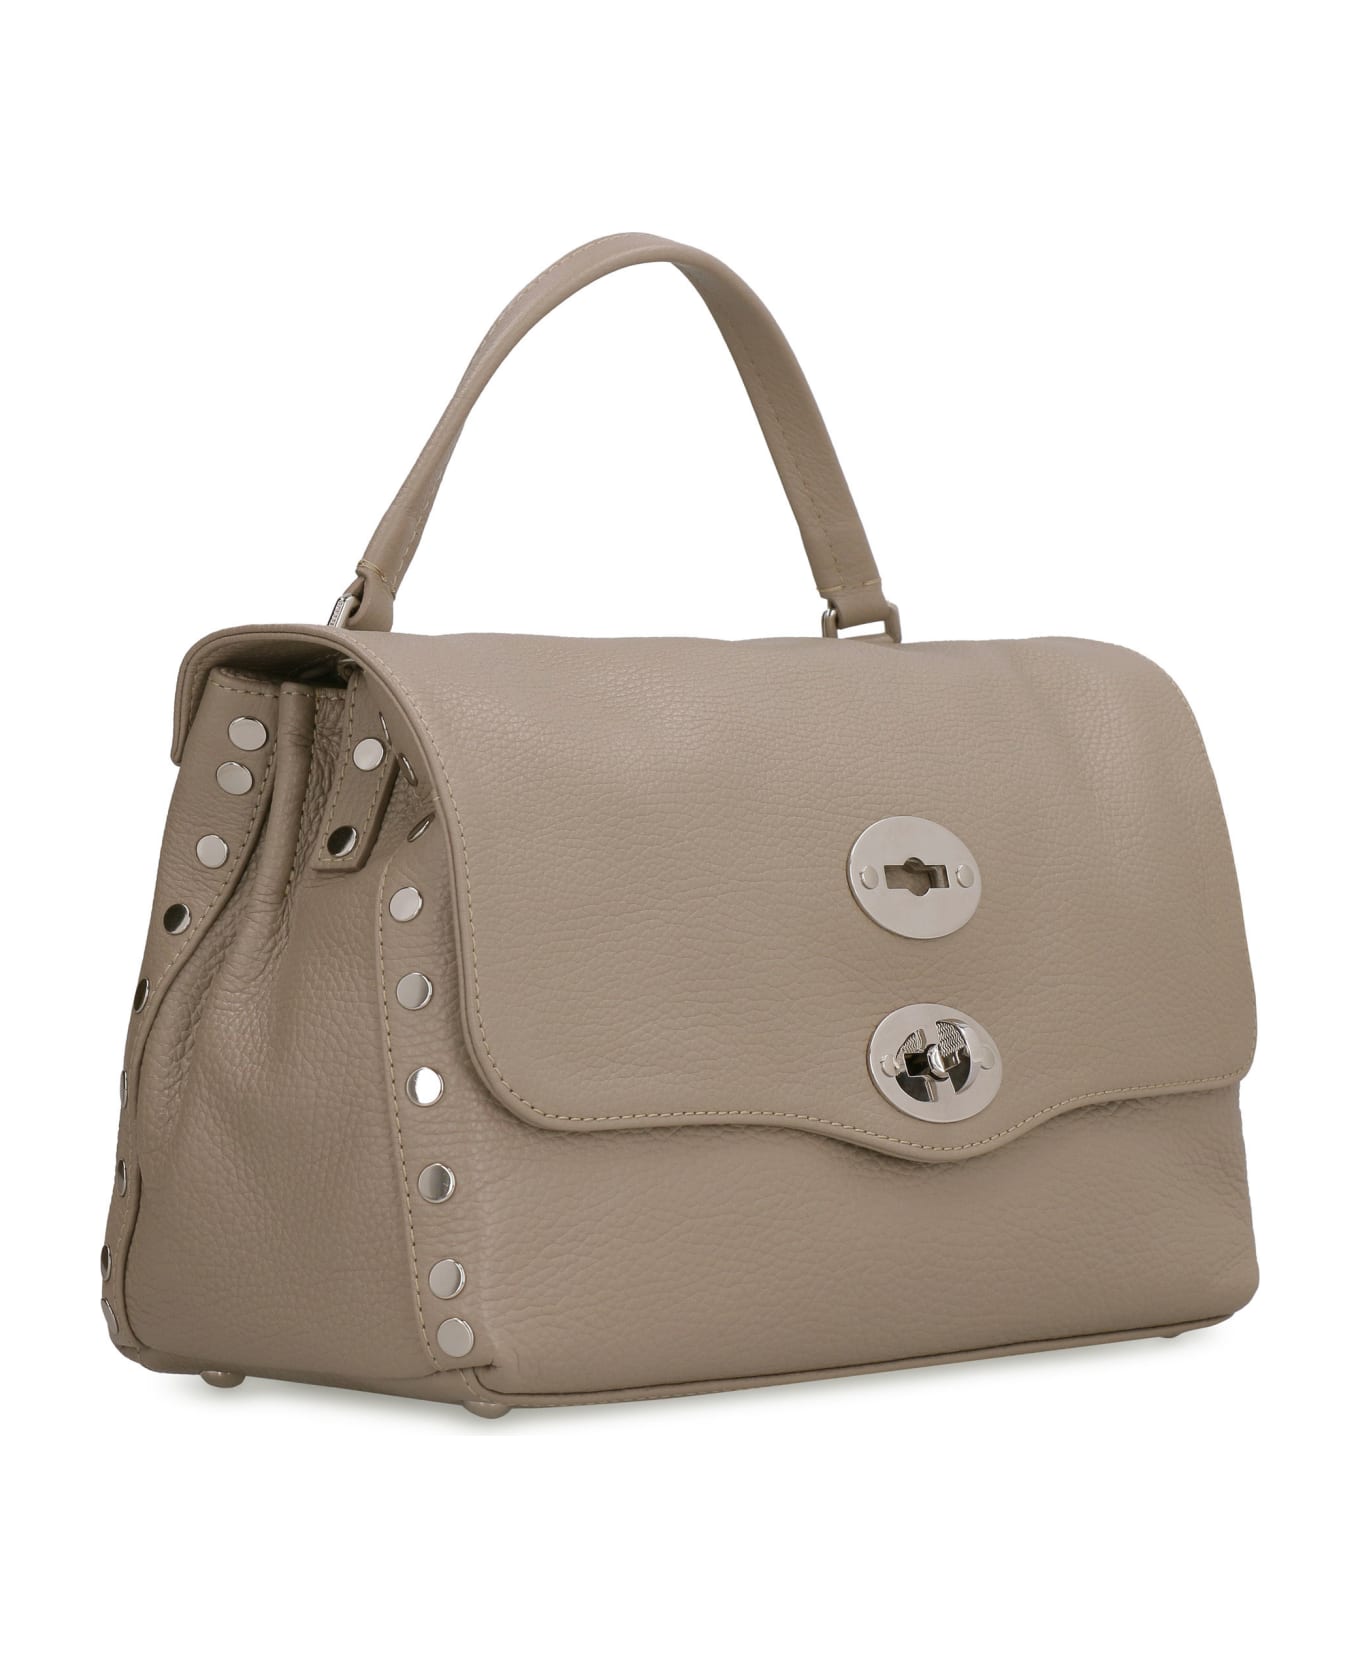 Zanellato Postina S Leather Handbag - Creta